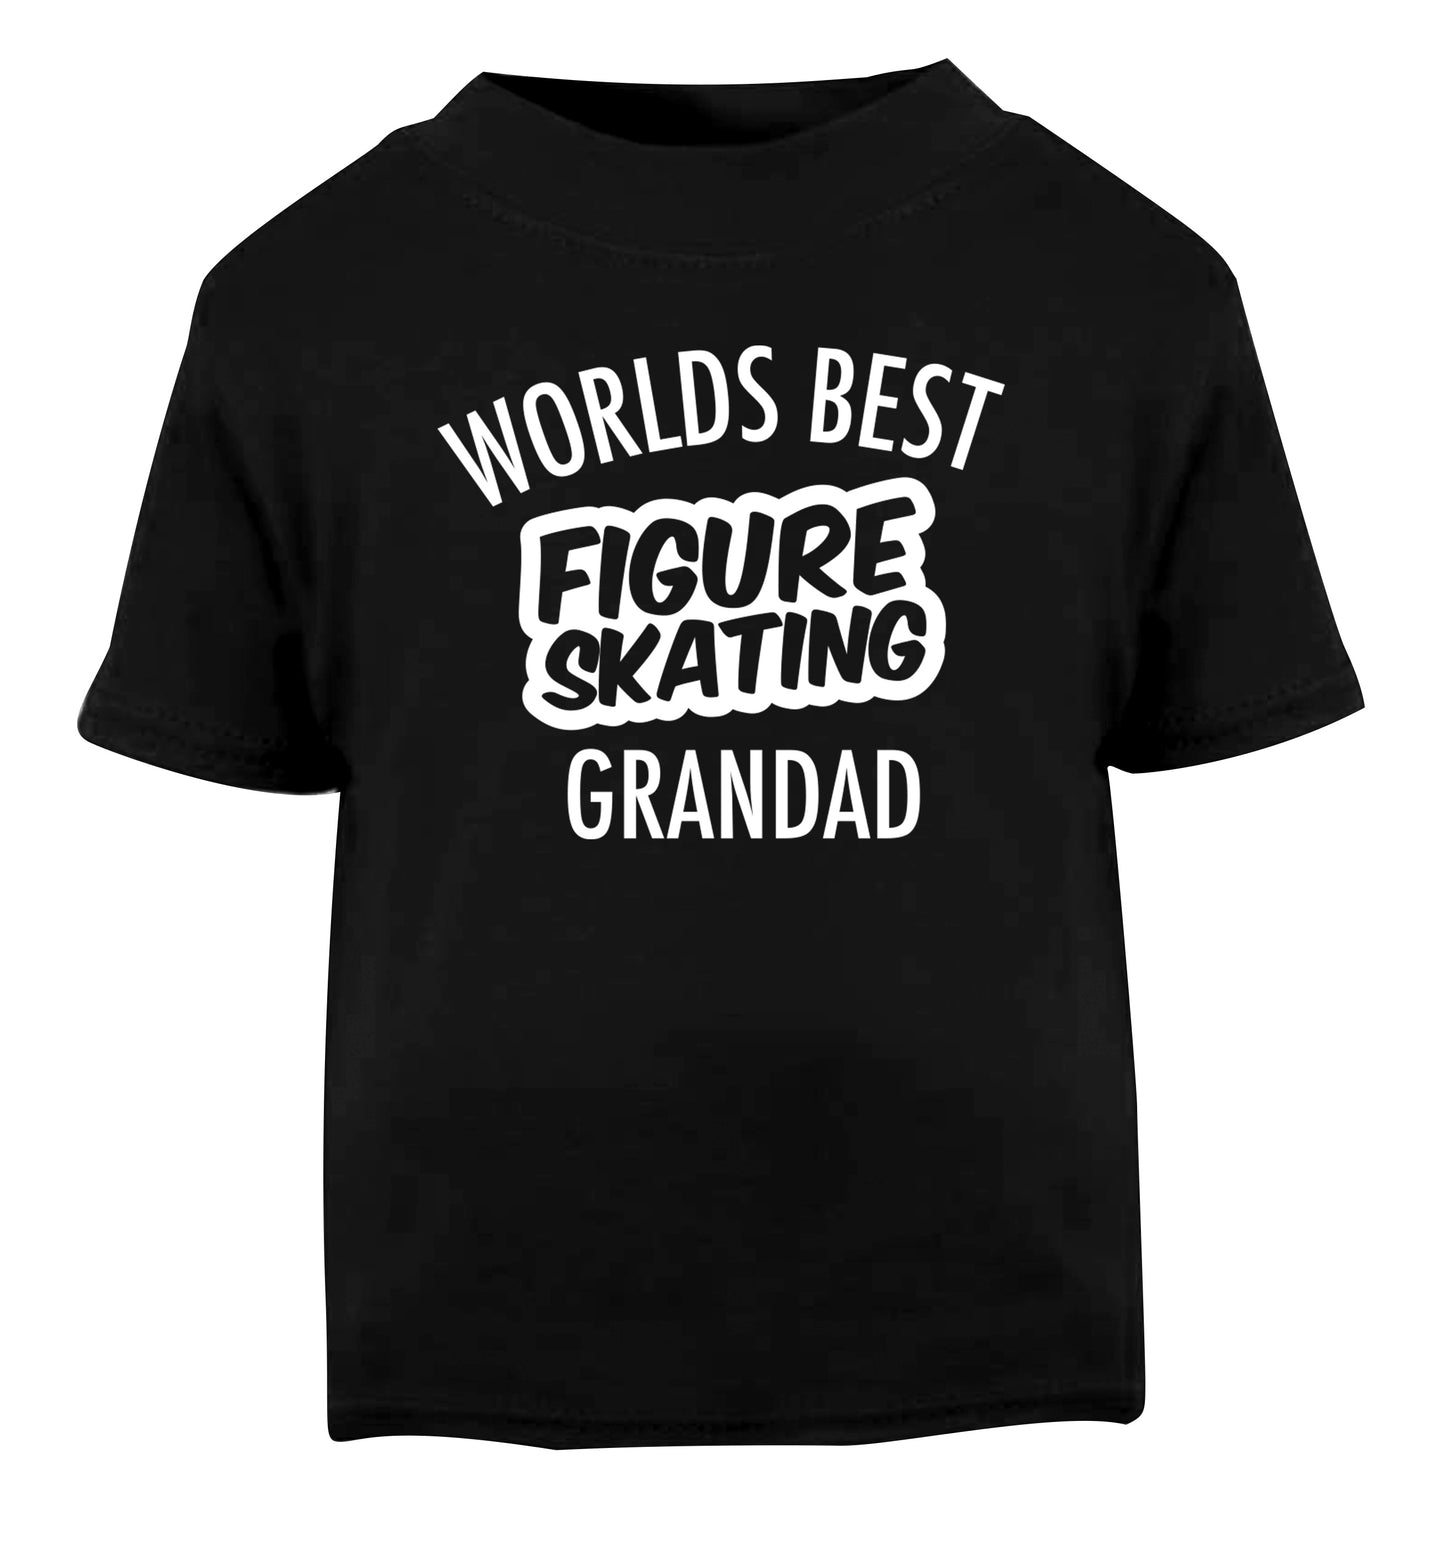 Worlds best figure skating grandad Black Baby Toddler Tshirt 2 years